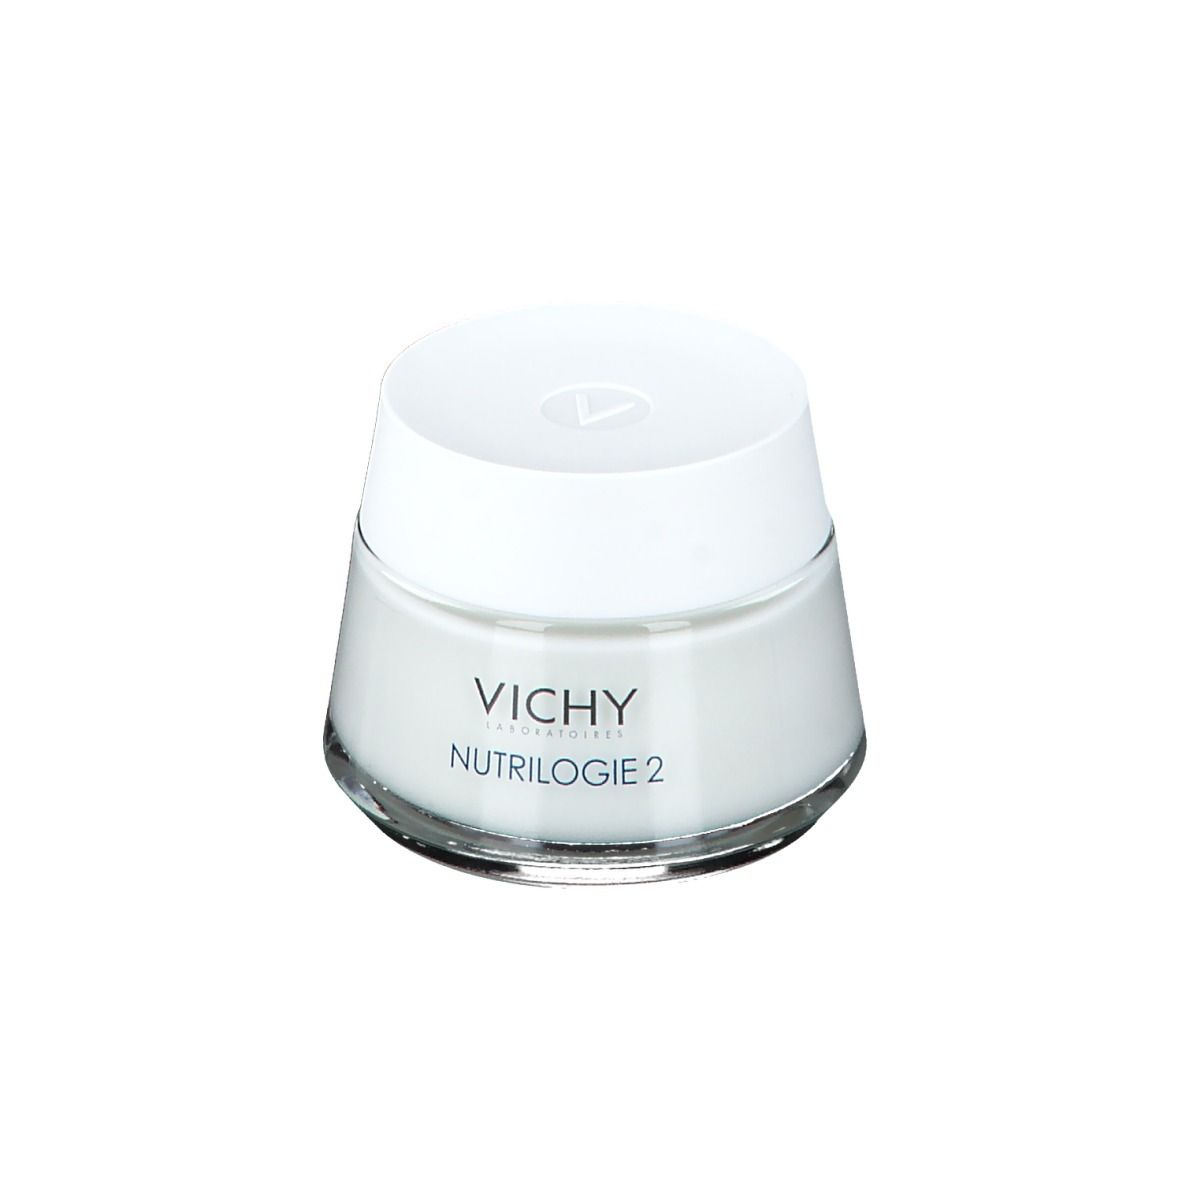 Vichy Nutrilogie 2 Creme für sehr trockene Haut